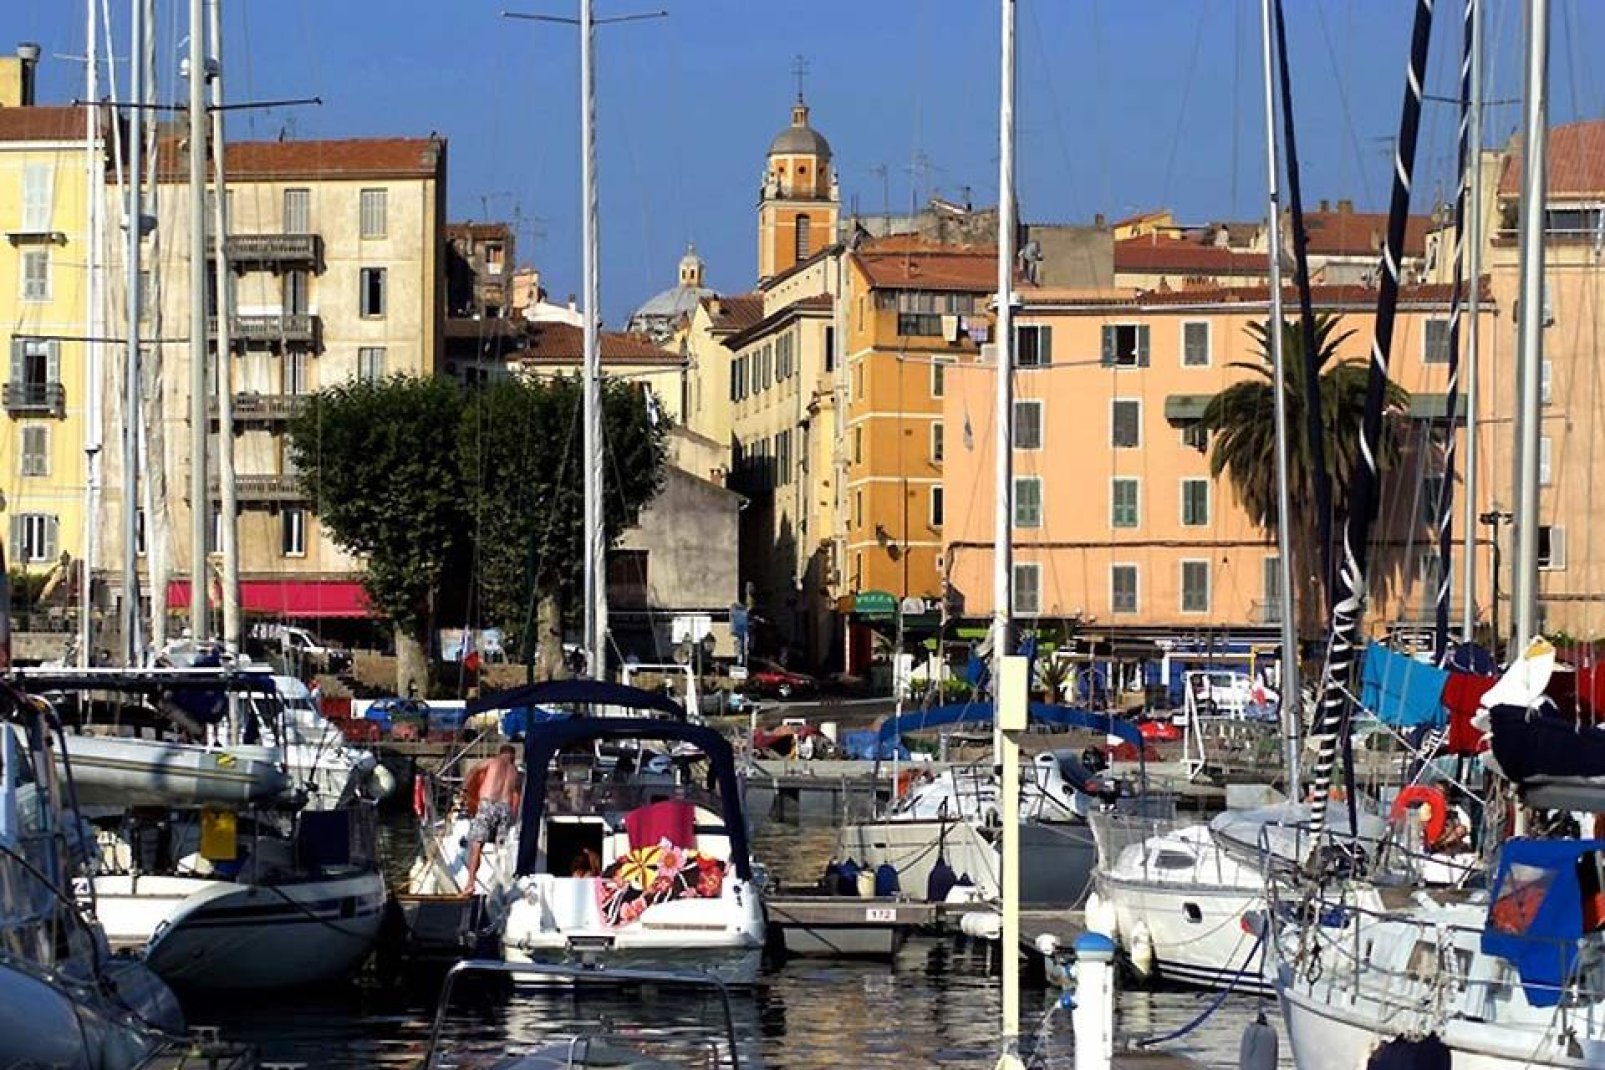 Ajaccio, gracias a su puerto, su casco antiguo, sus callejones, playas y calas, constituye un lugar muy agradable.